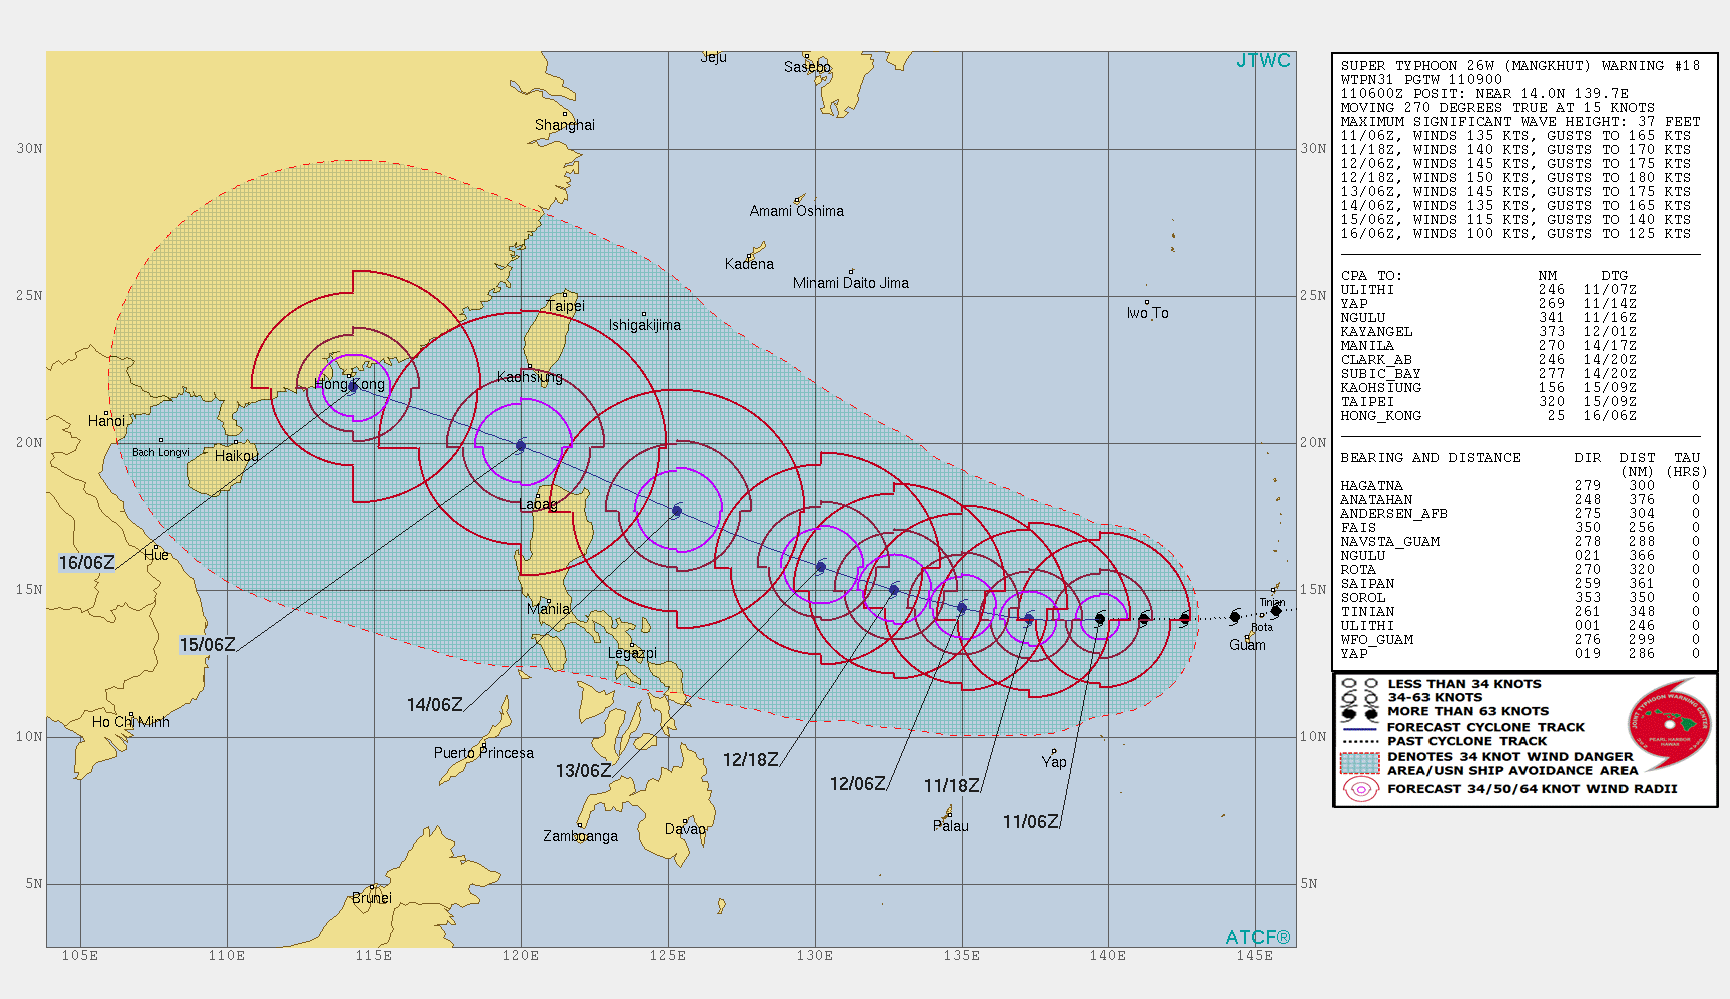 Mangkhut now a supertyphoon: JTWC 1